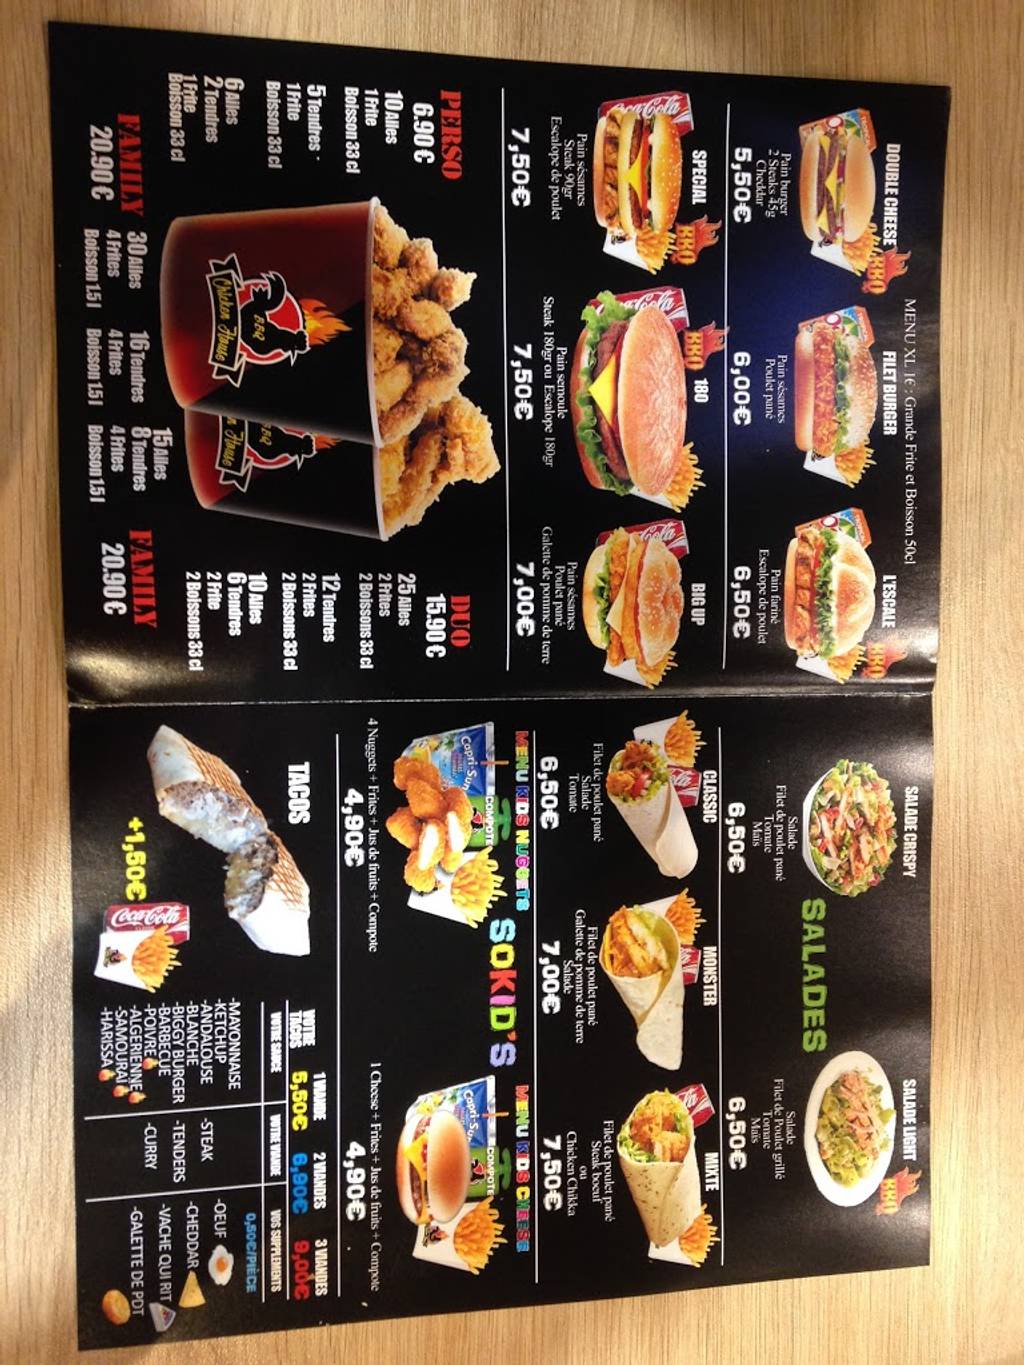 Chicken House halal Burger Pontoise - Junk food Menu Fast food Advertising Font